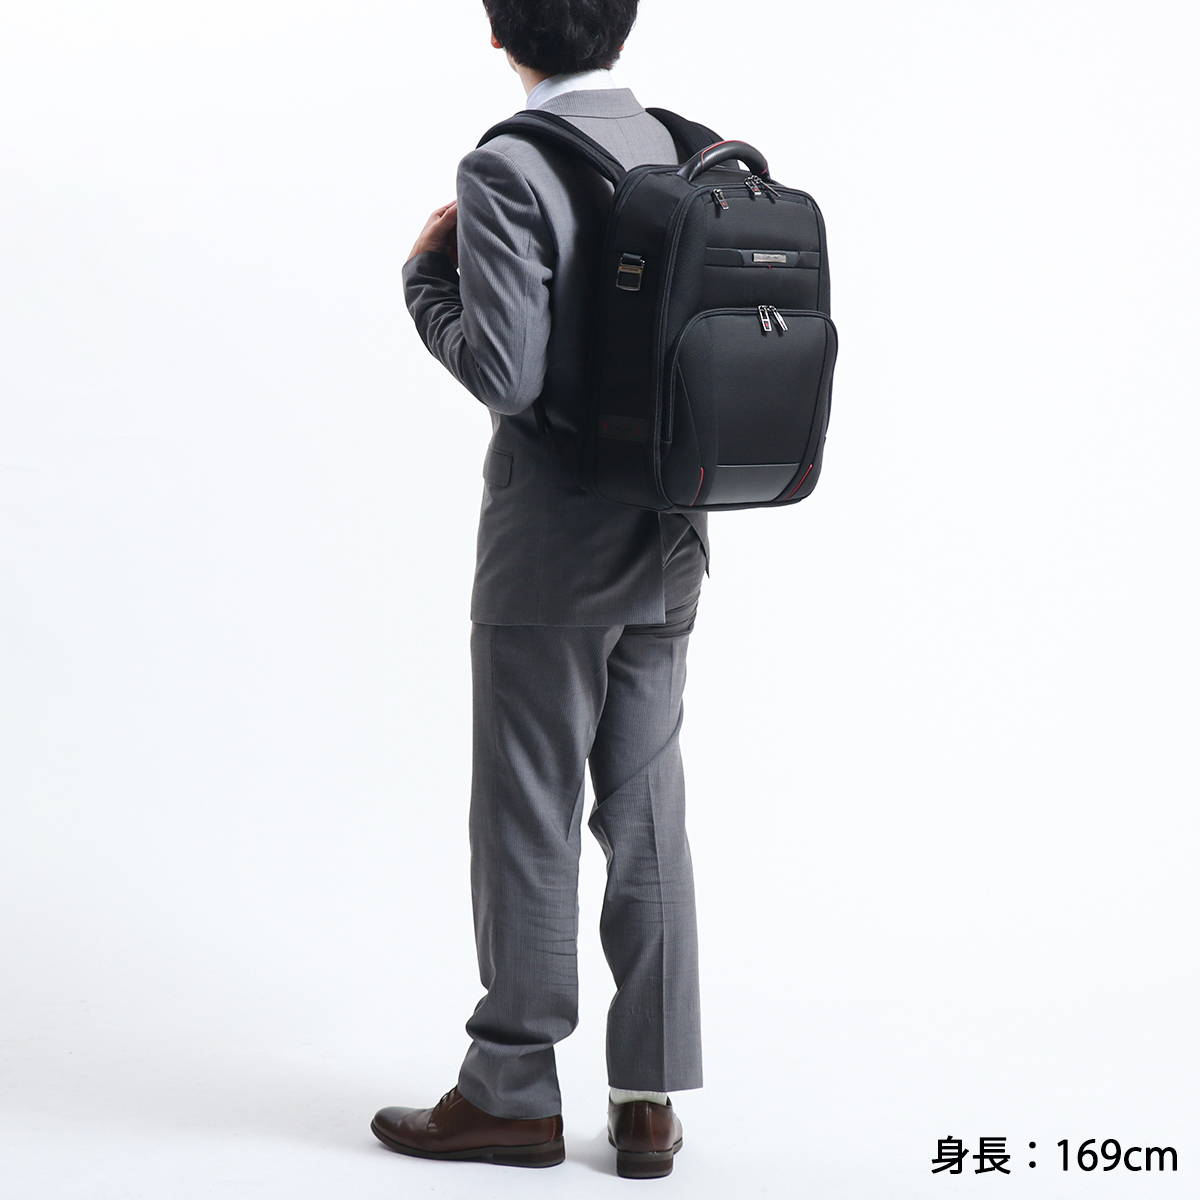 日本正規品】Samsonite サムソナイト Pro-DLX5 Laptop Backpack 15.6